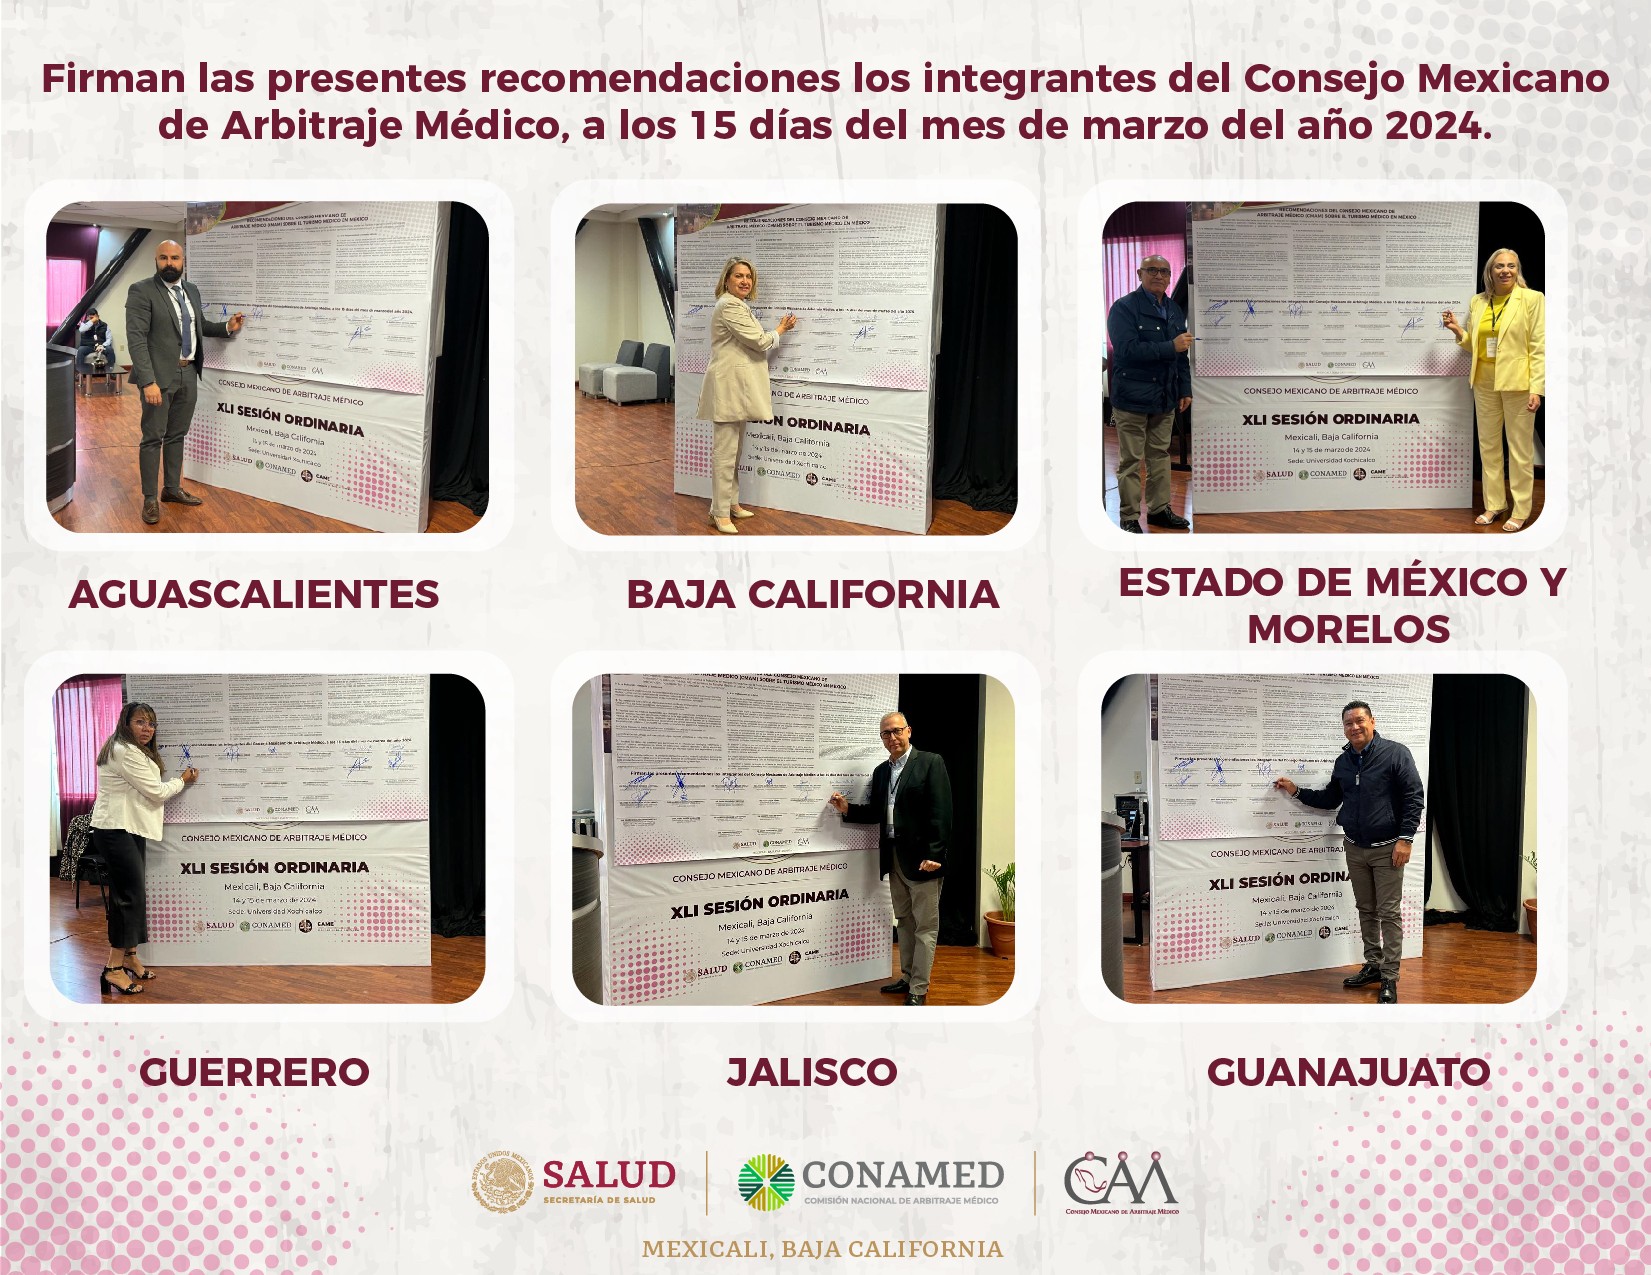 Firman las recomendaciones los integrantes del Consejo Mexicano de Arbitraje Médico.